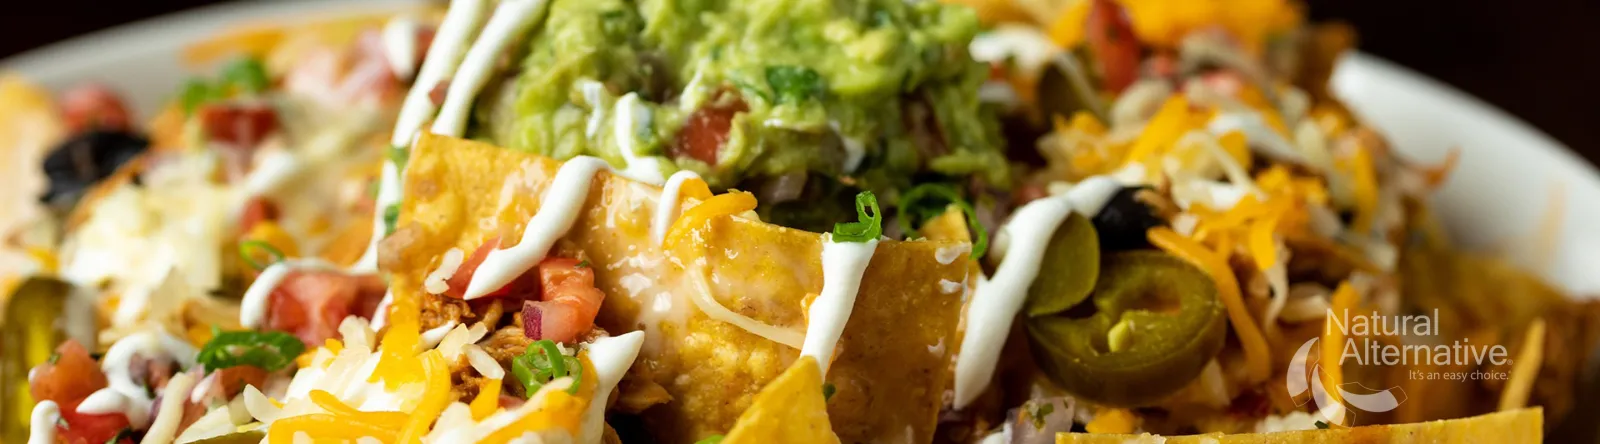 plate of delicious, healthy nachos